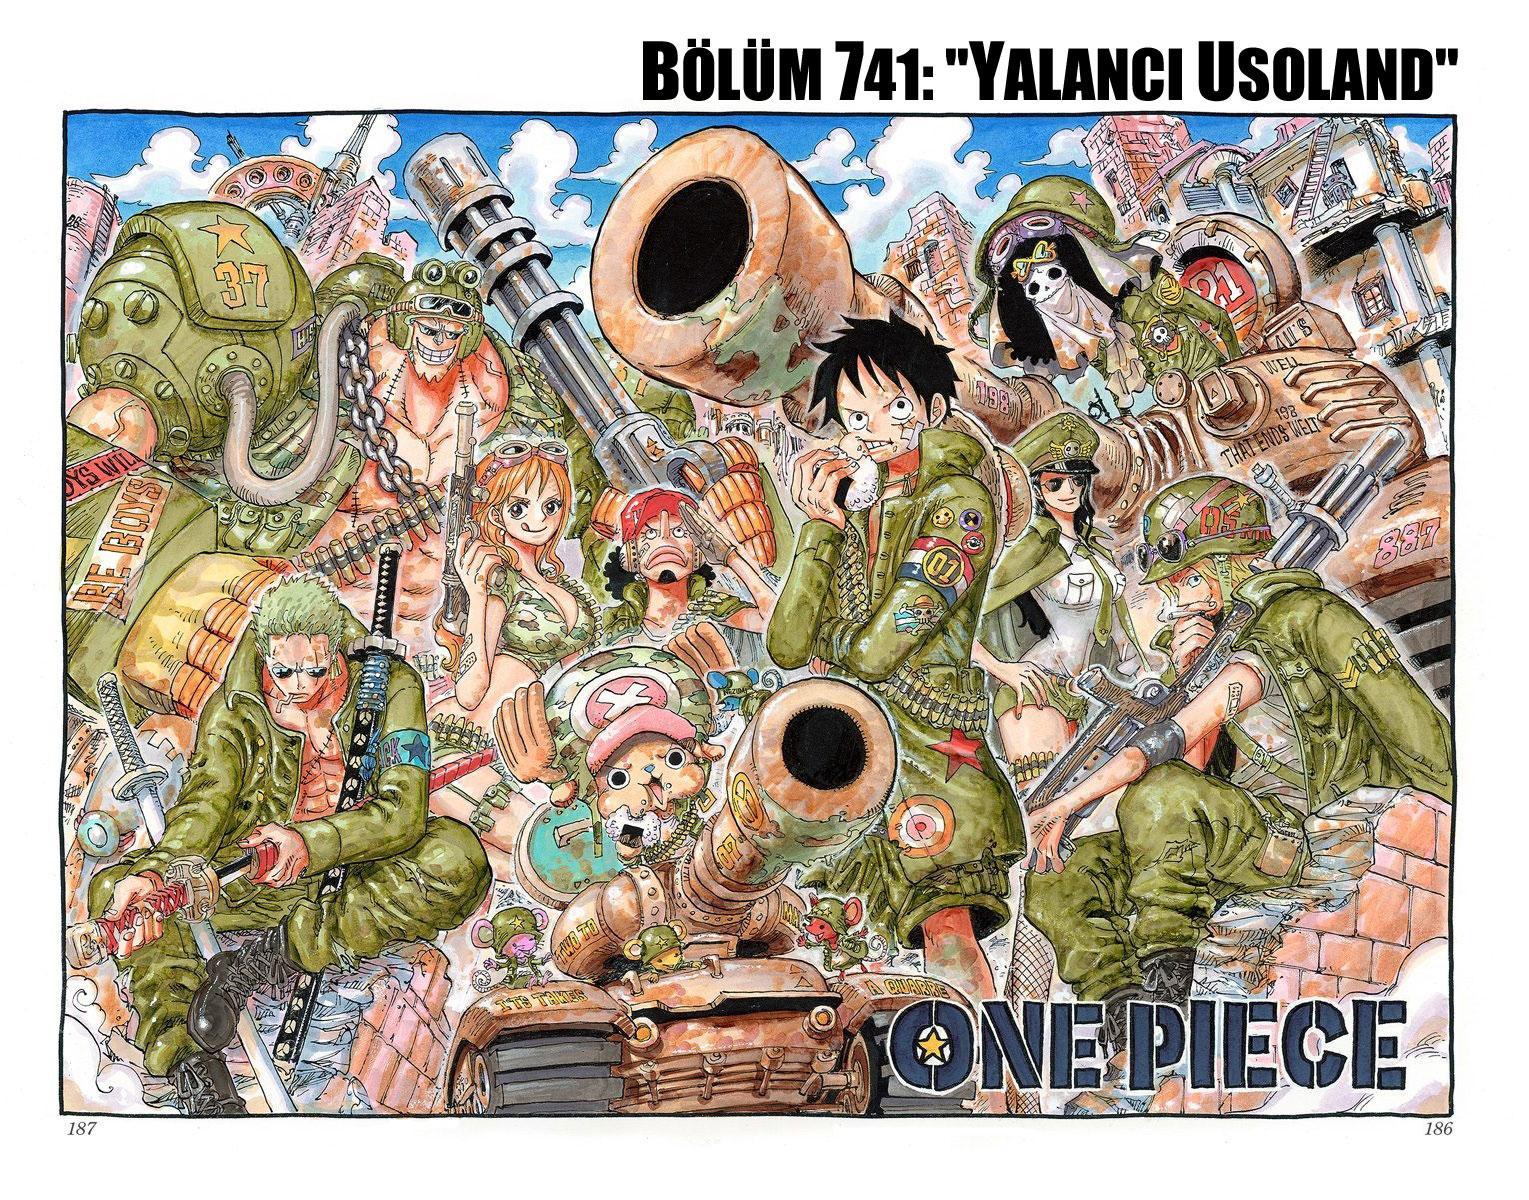 One Piece [Renkli] mangasının 741 bölümünün 2. sayfasını okuyorsunuz.